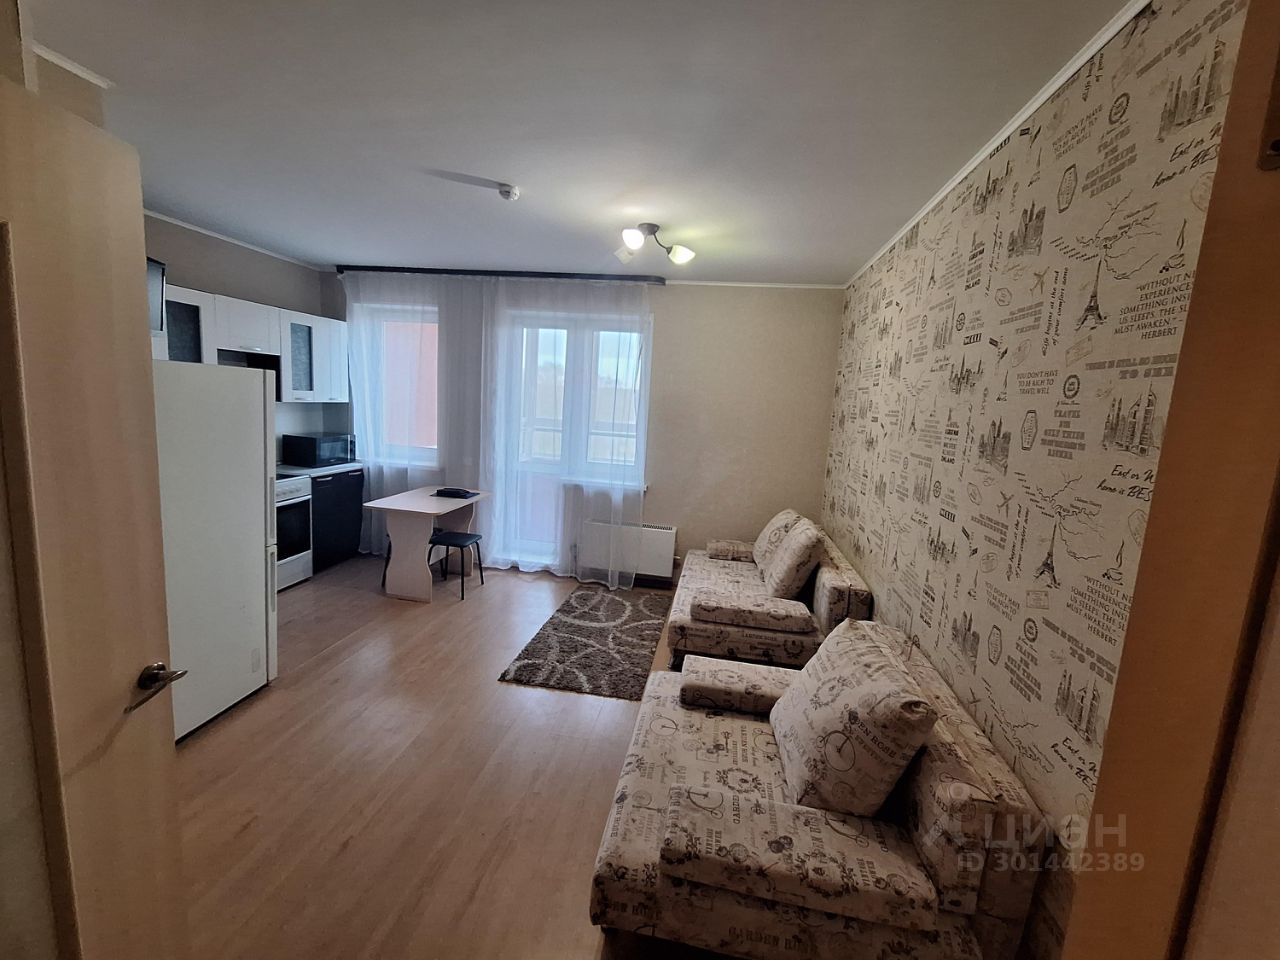 Уютная квартира в Екатеринбурге, 25 кв.м, кухня 5 кв.м, 8 этаж, посуточная аренда. Современный интерьер, светлая комната, удобная мебель.